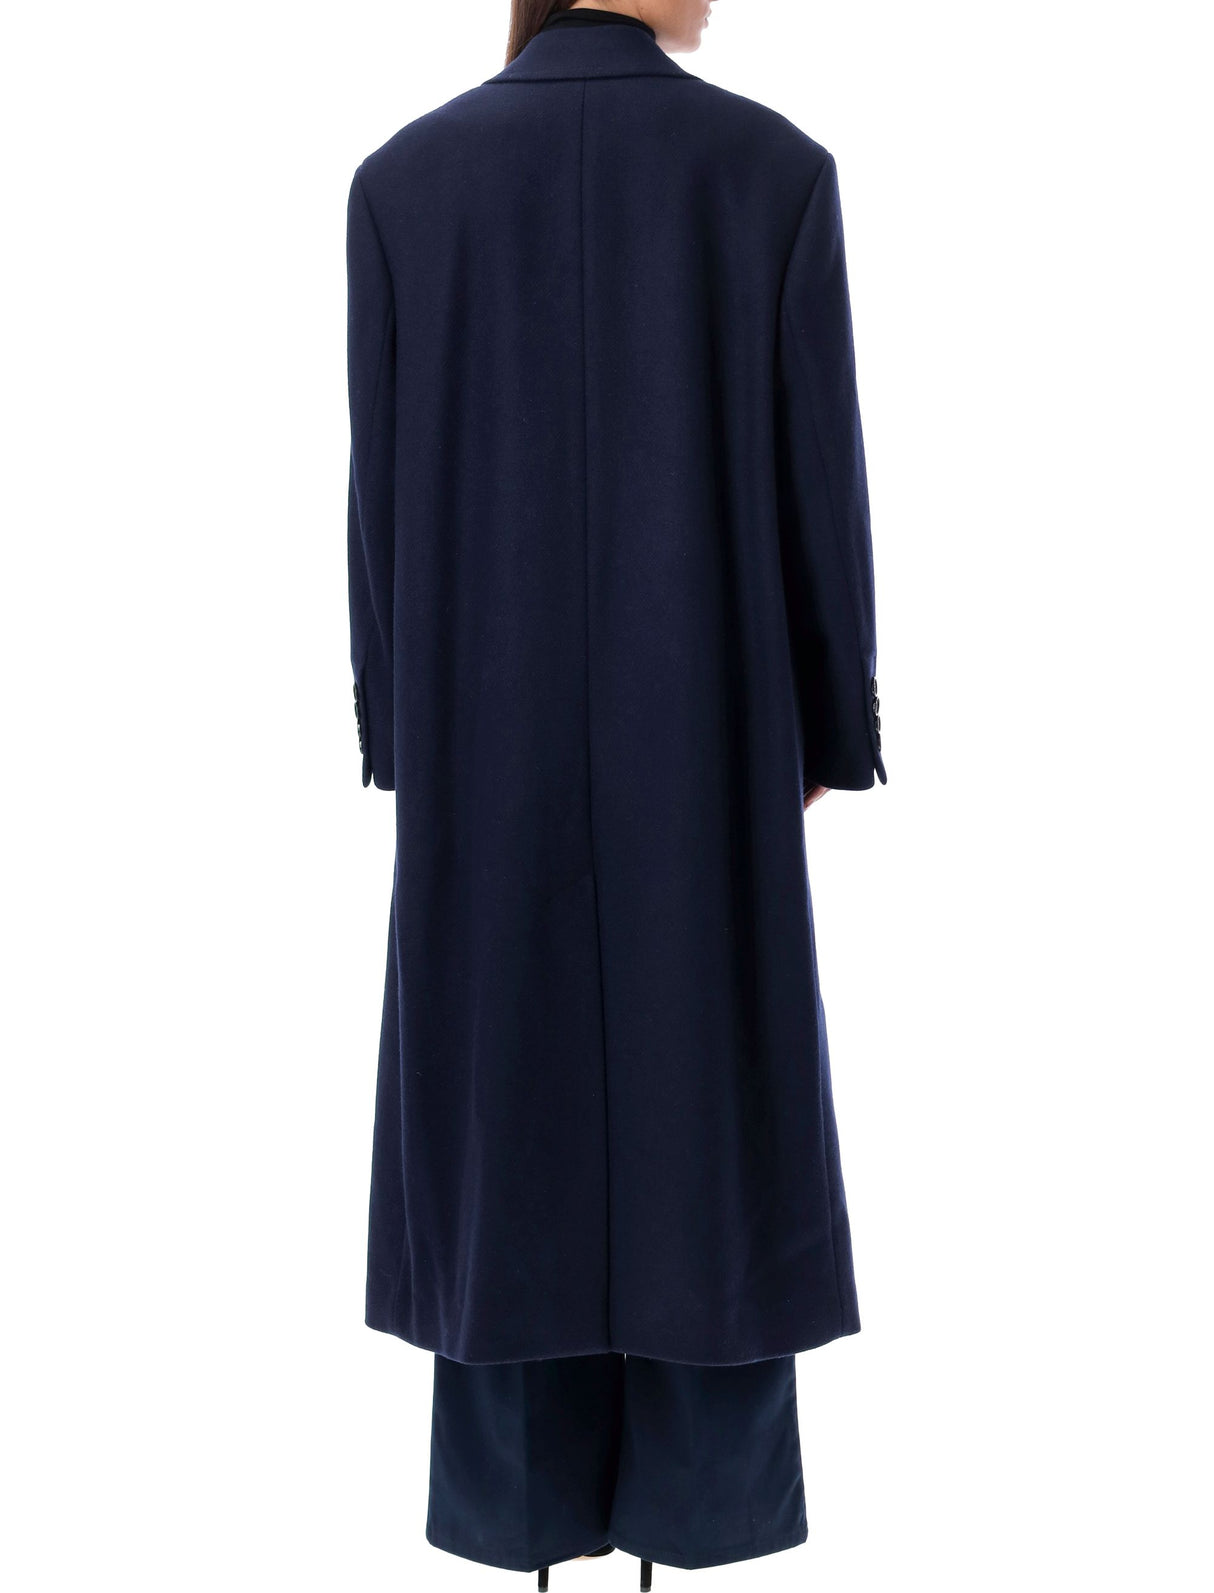 Áo khoác hai hàng mũi tàu màu xanh dương cho nữ với kiểu dáng đơn giản và đường viền xòe